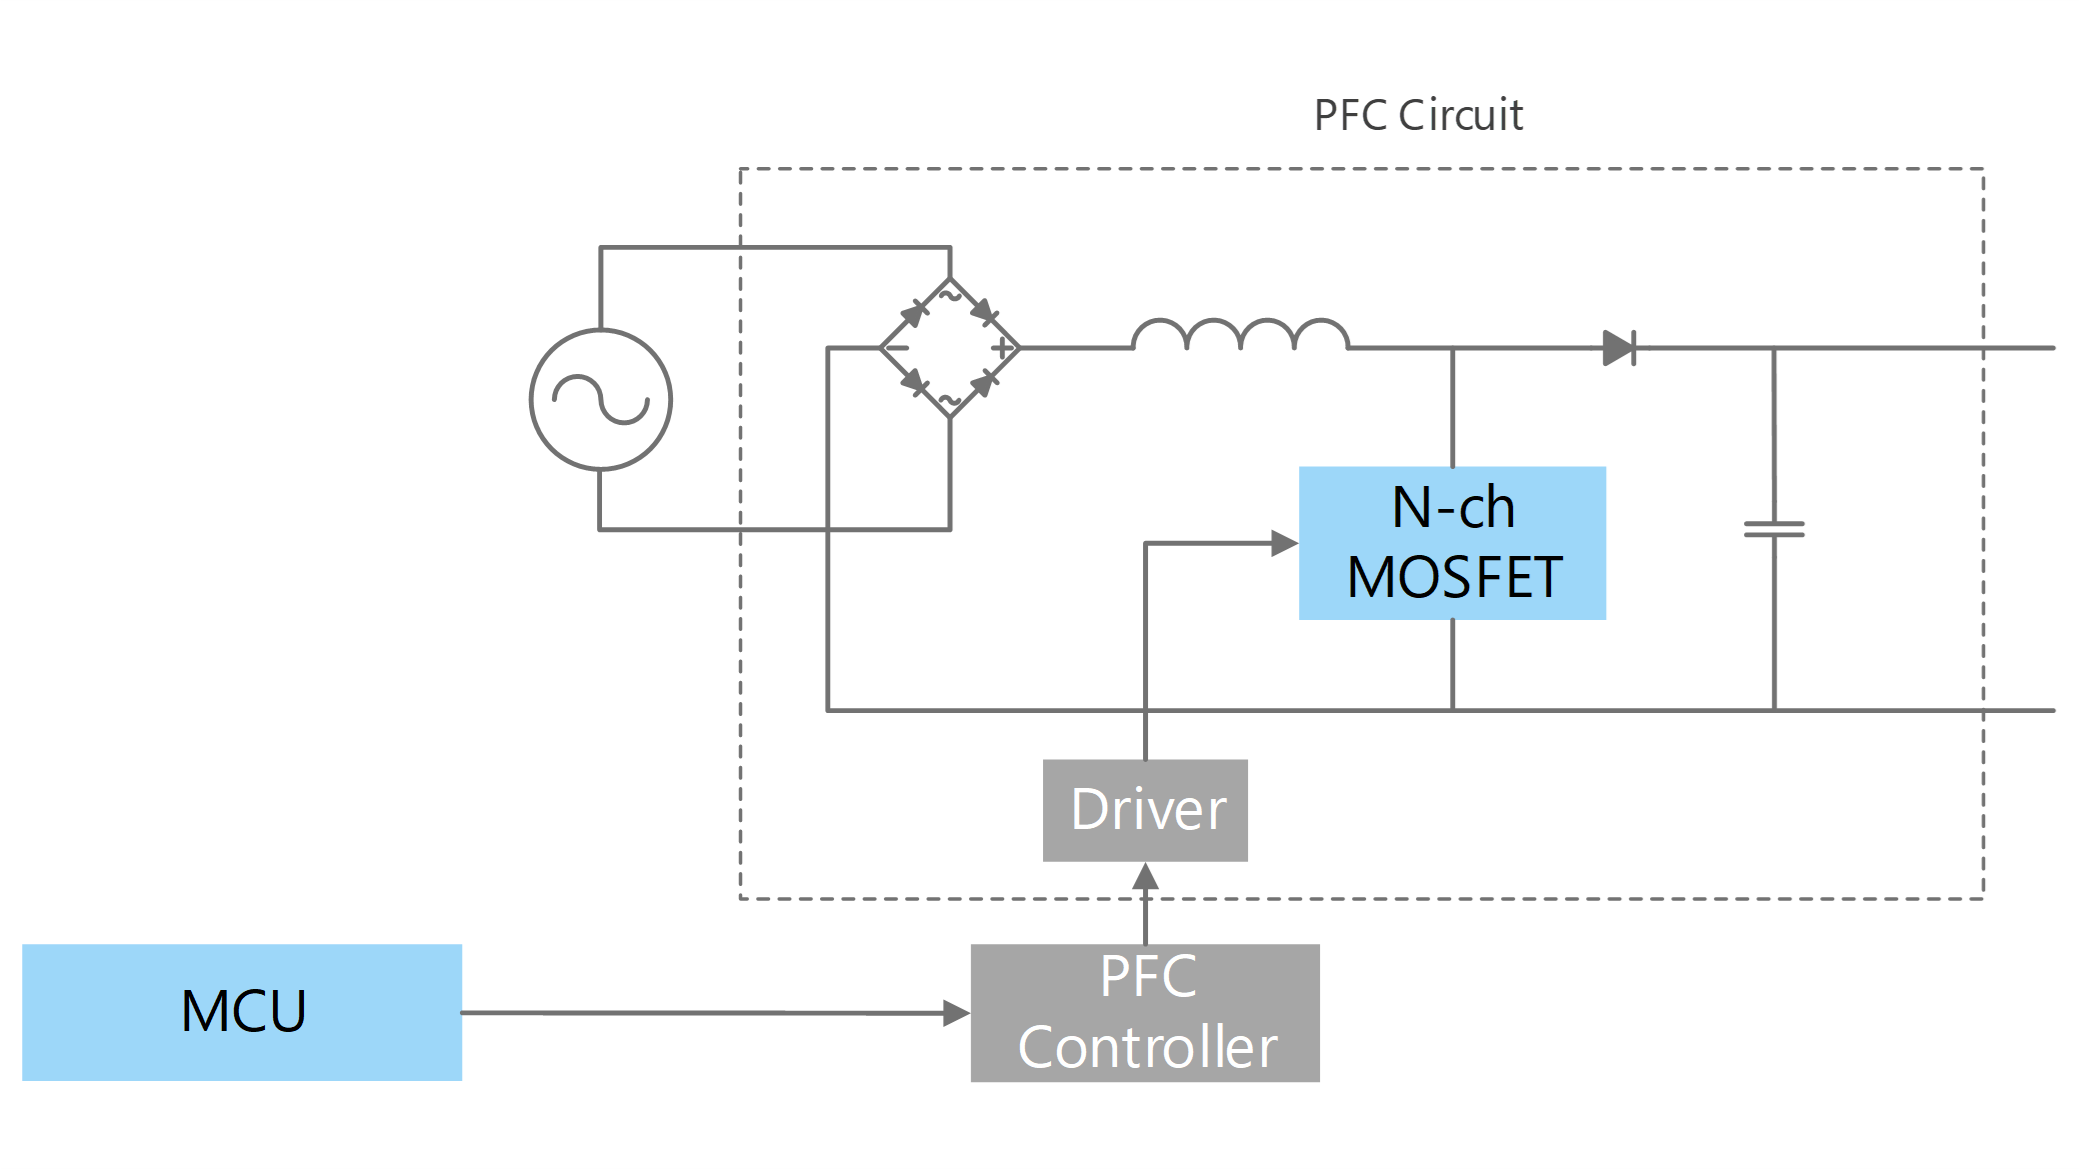 PFC circuit (Full switching)